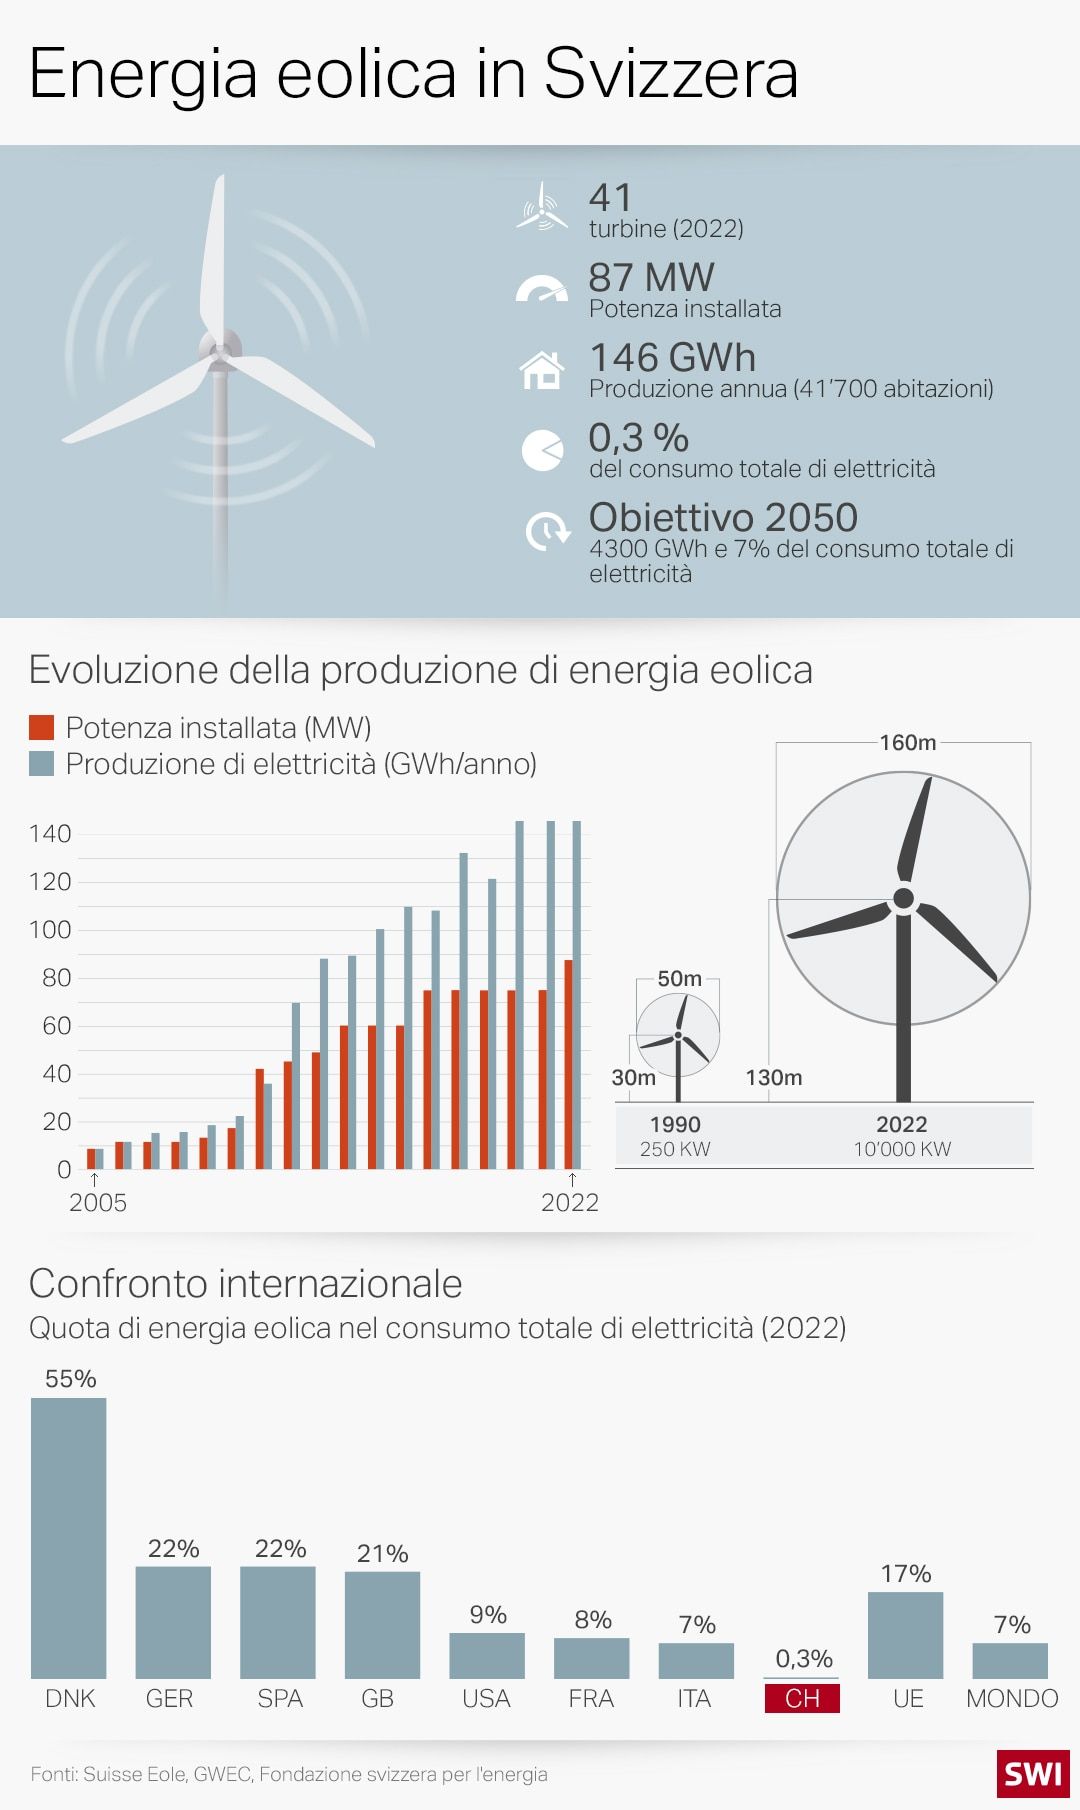 windpower-ita-data.jpg